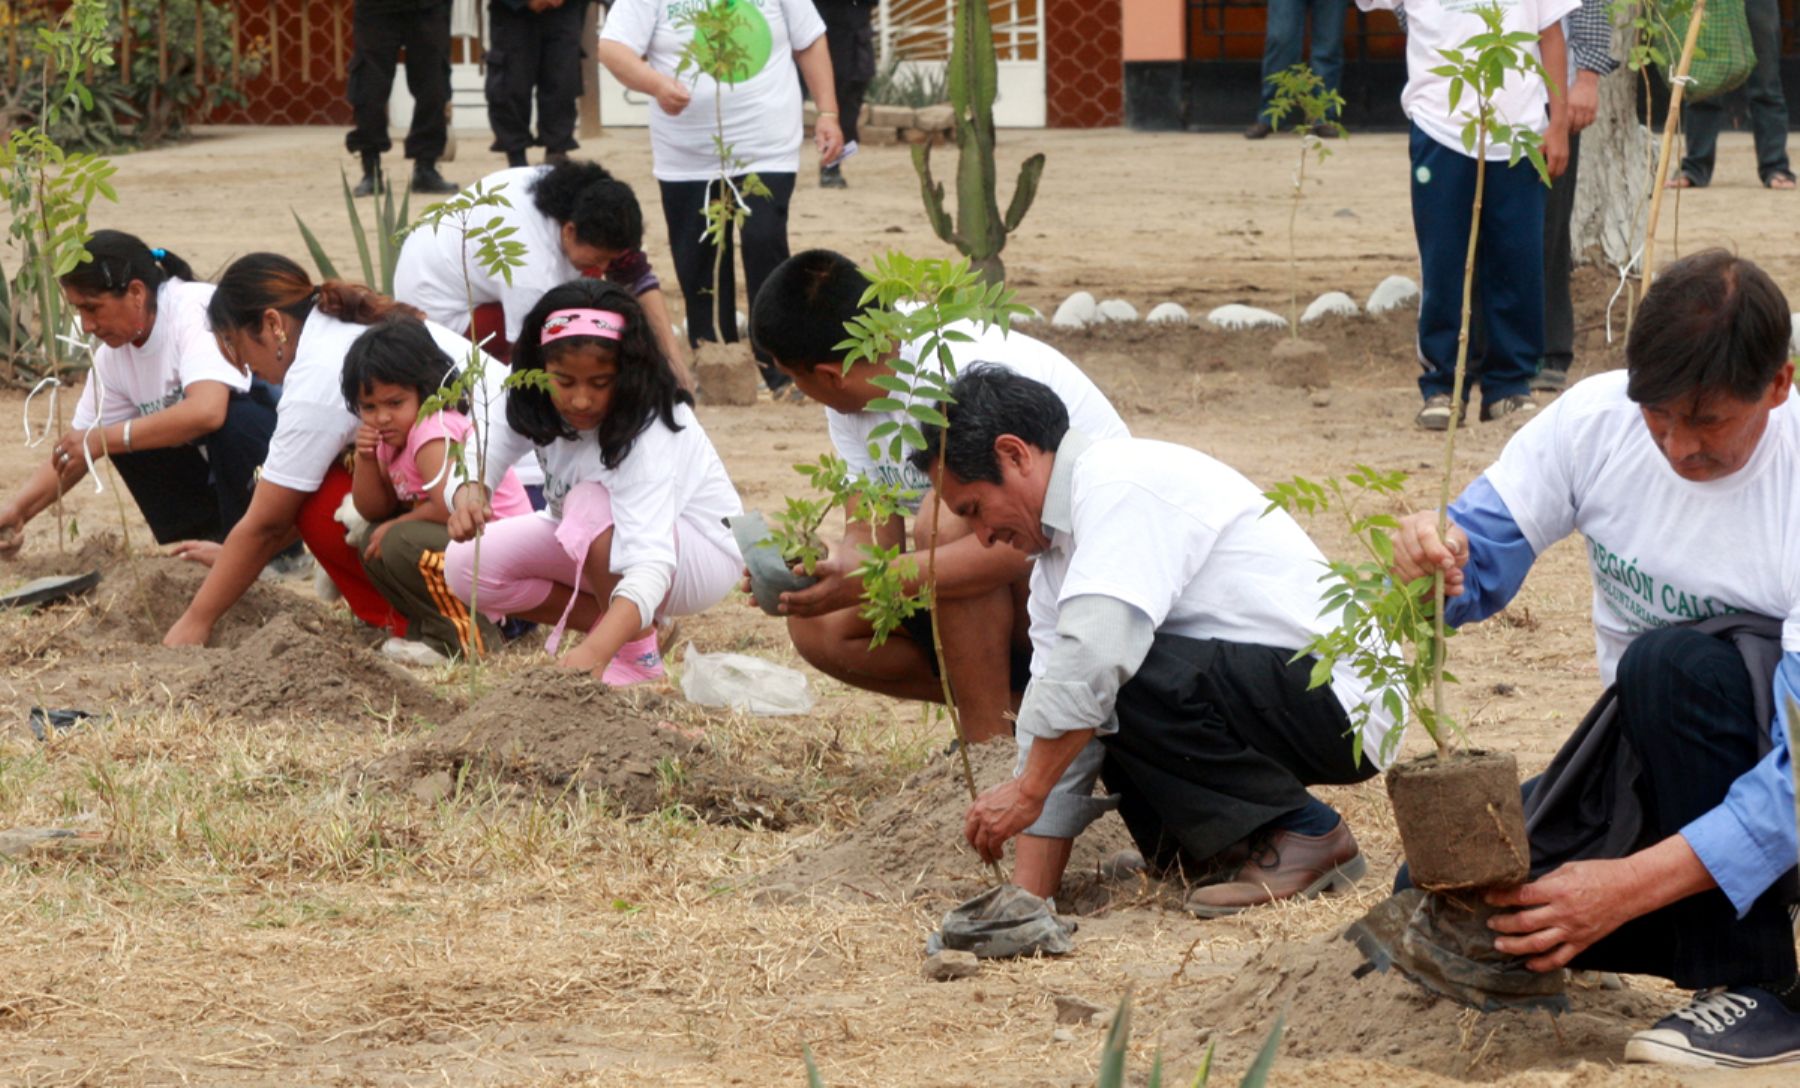 Vecinos voluntarios del Callao “adoptan” árboles para cuidarlos | Noticias  | Agencia Peruana de Noticias Andina